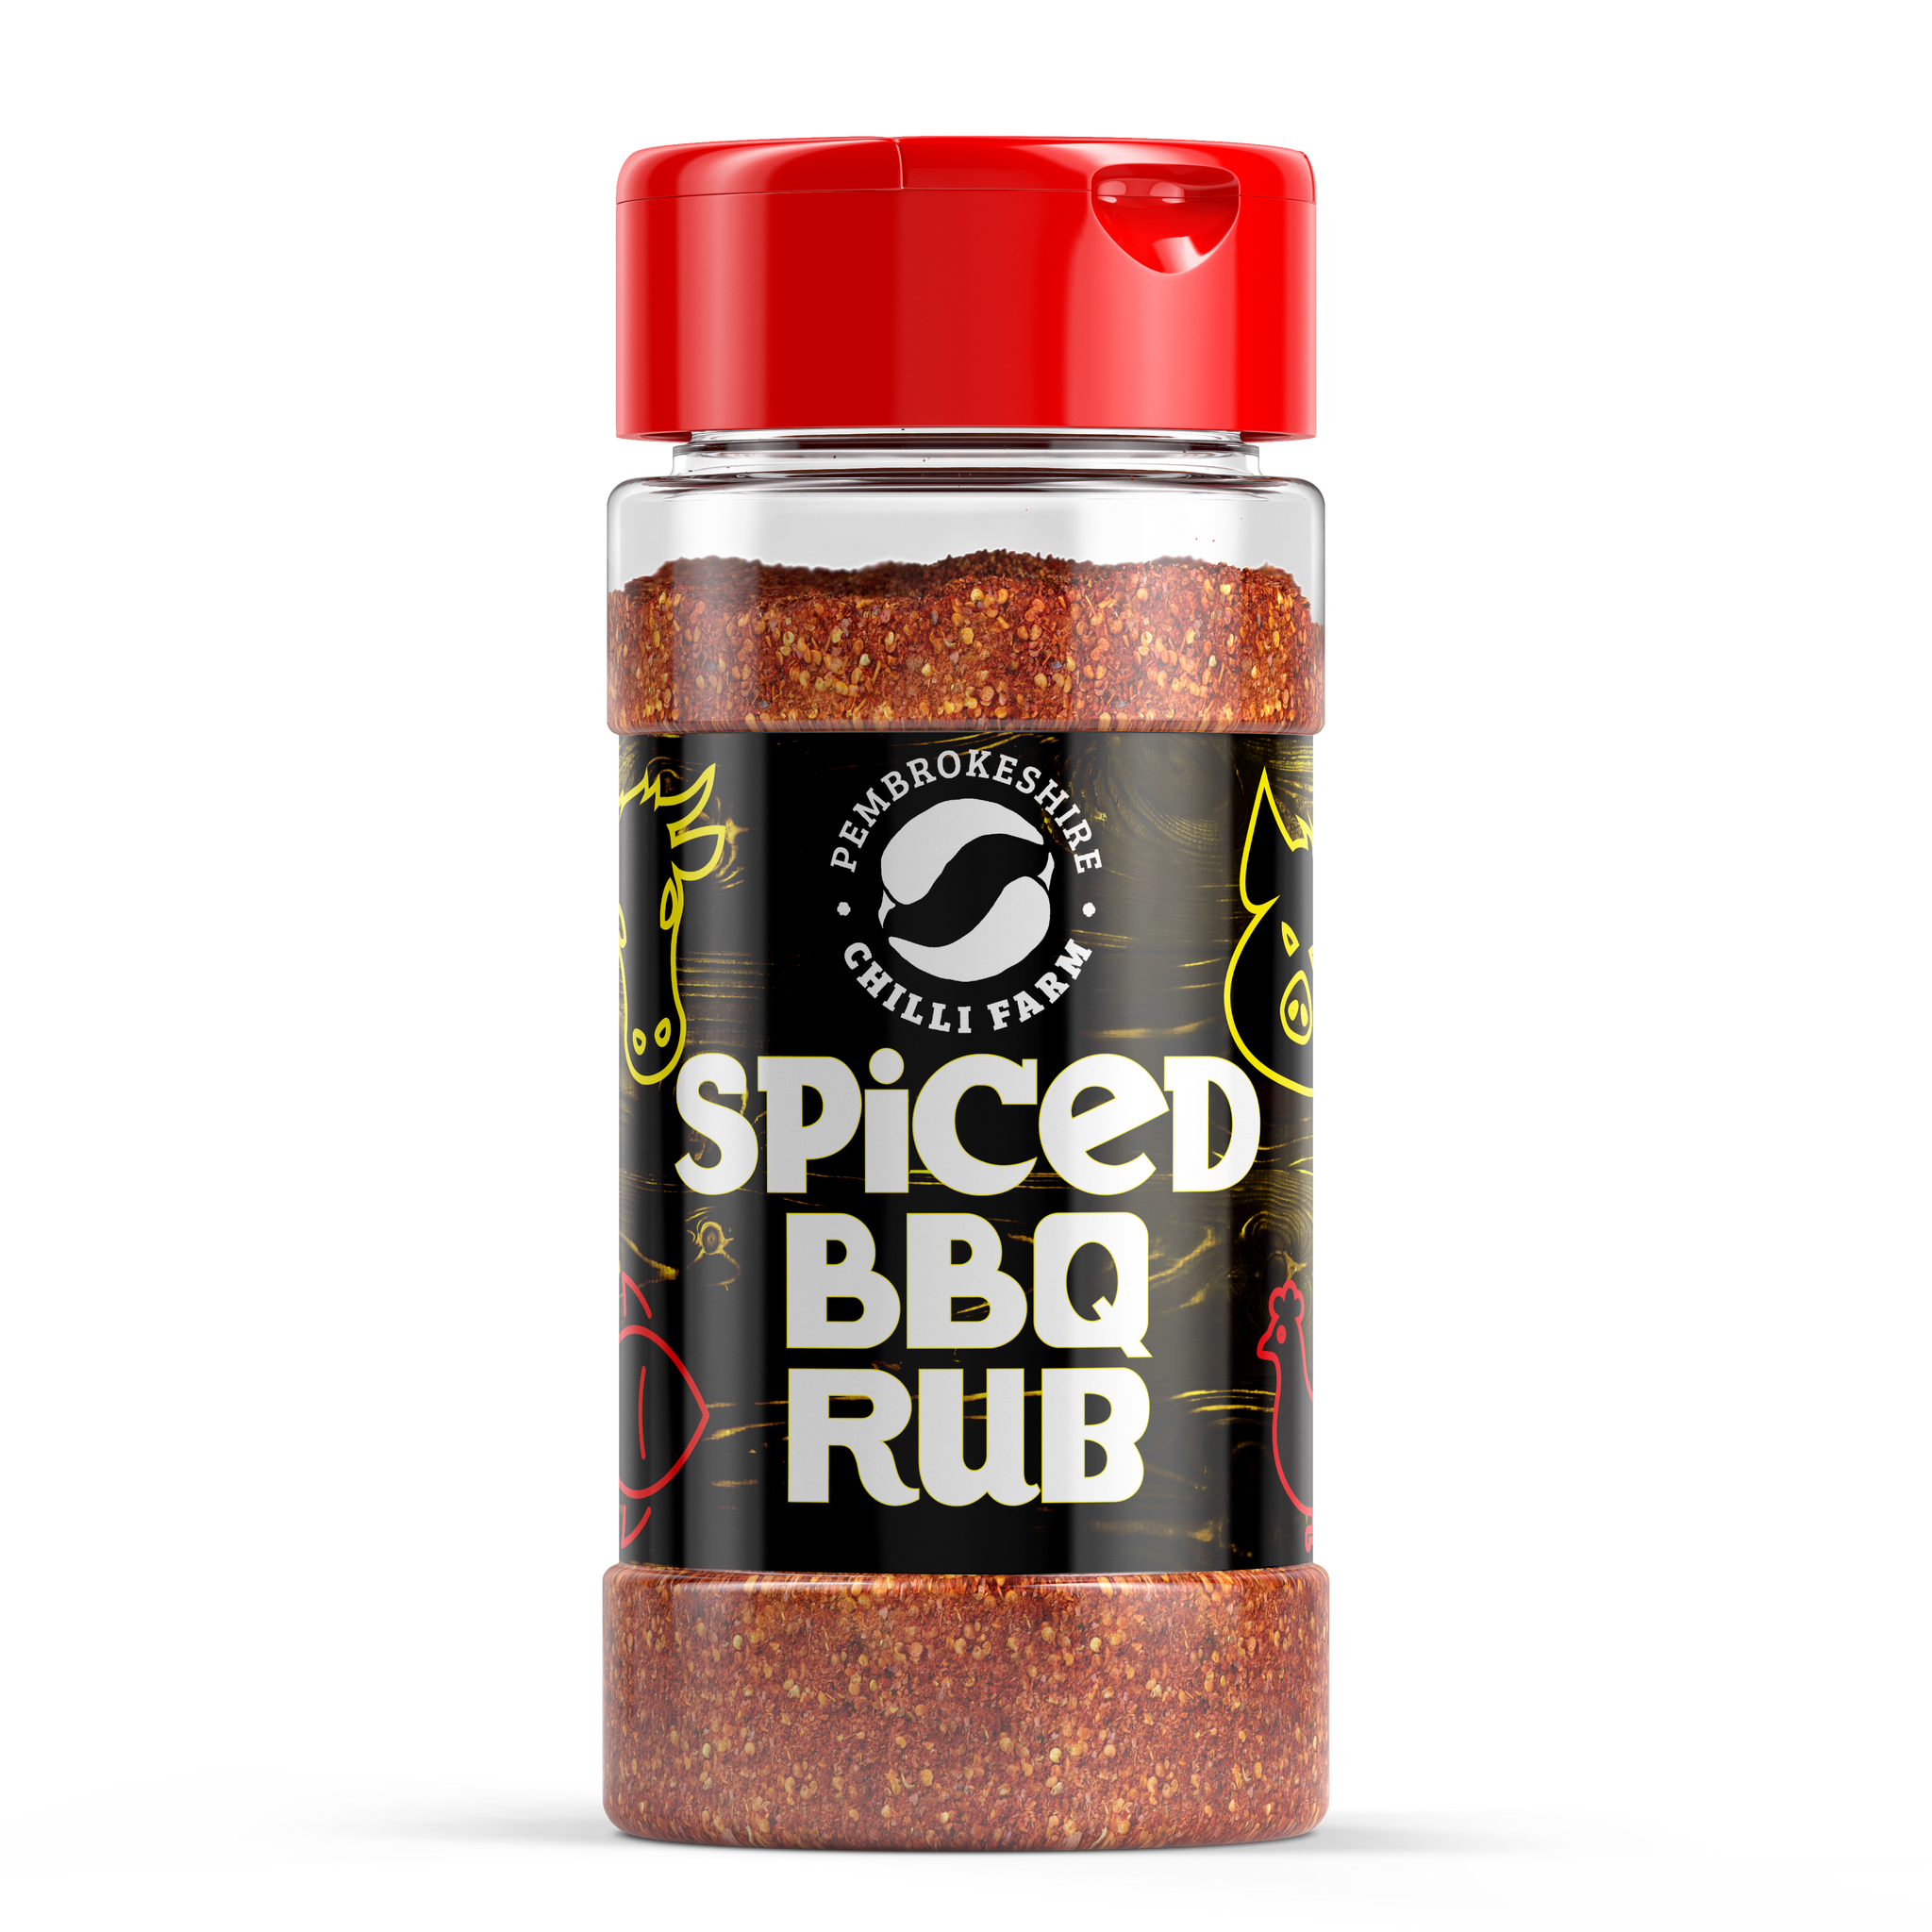 Pembrokeshire Chilli Farm Spiced BBQ Rub (6x160g)